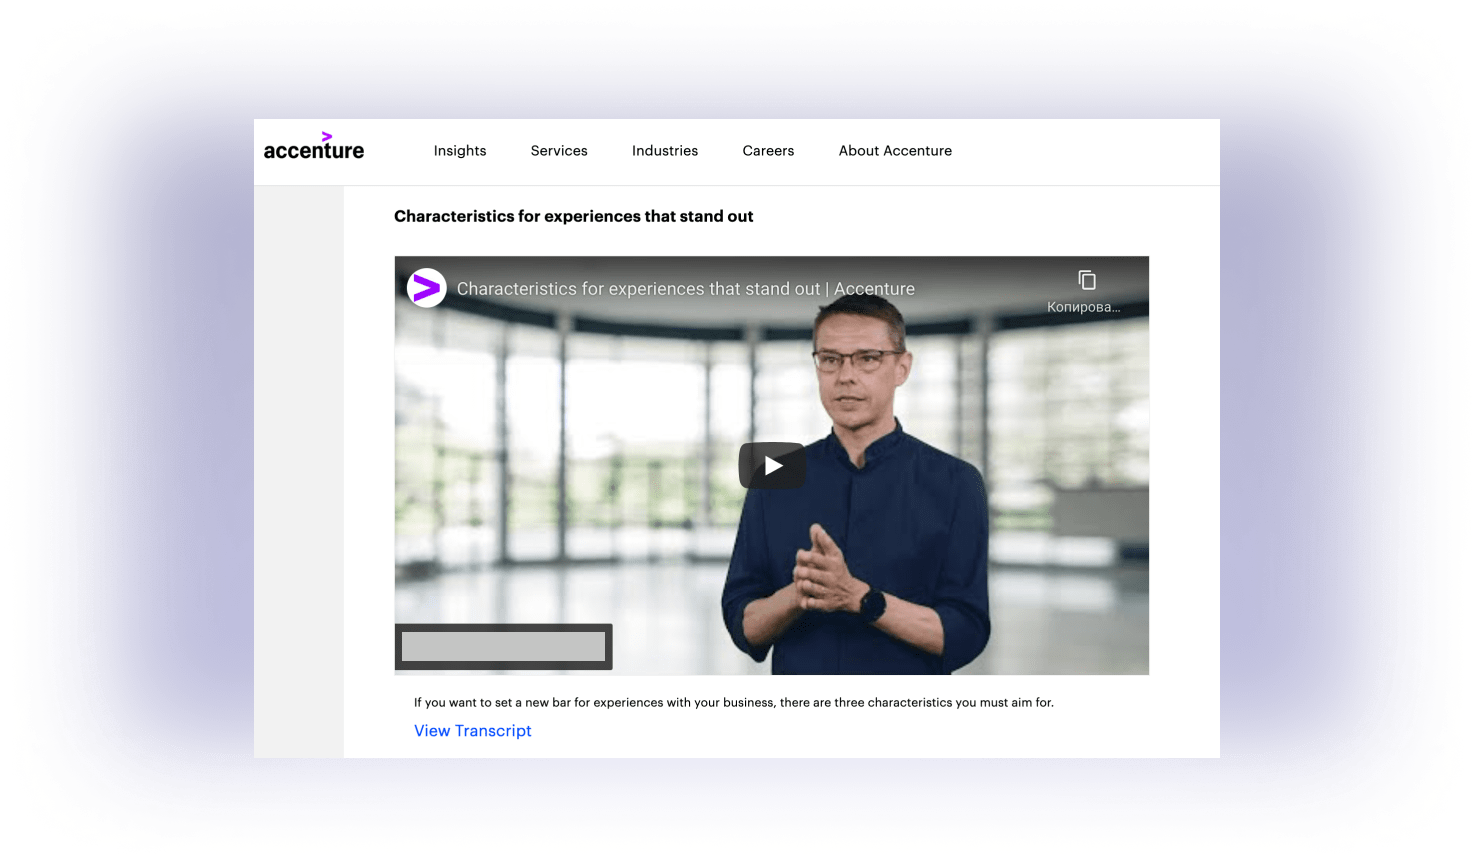 Accenture video content